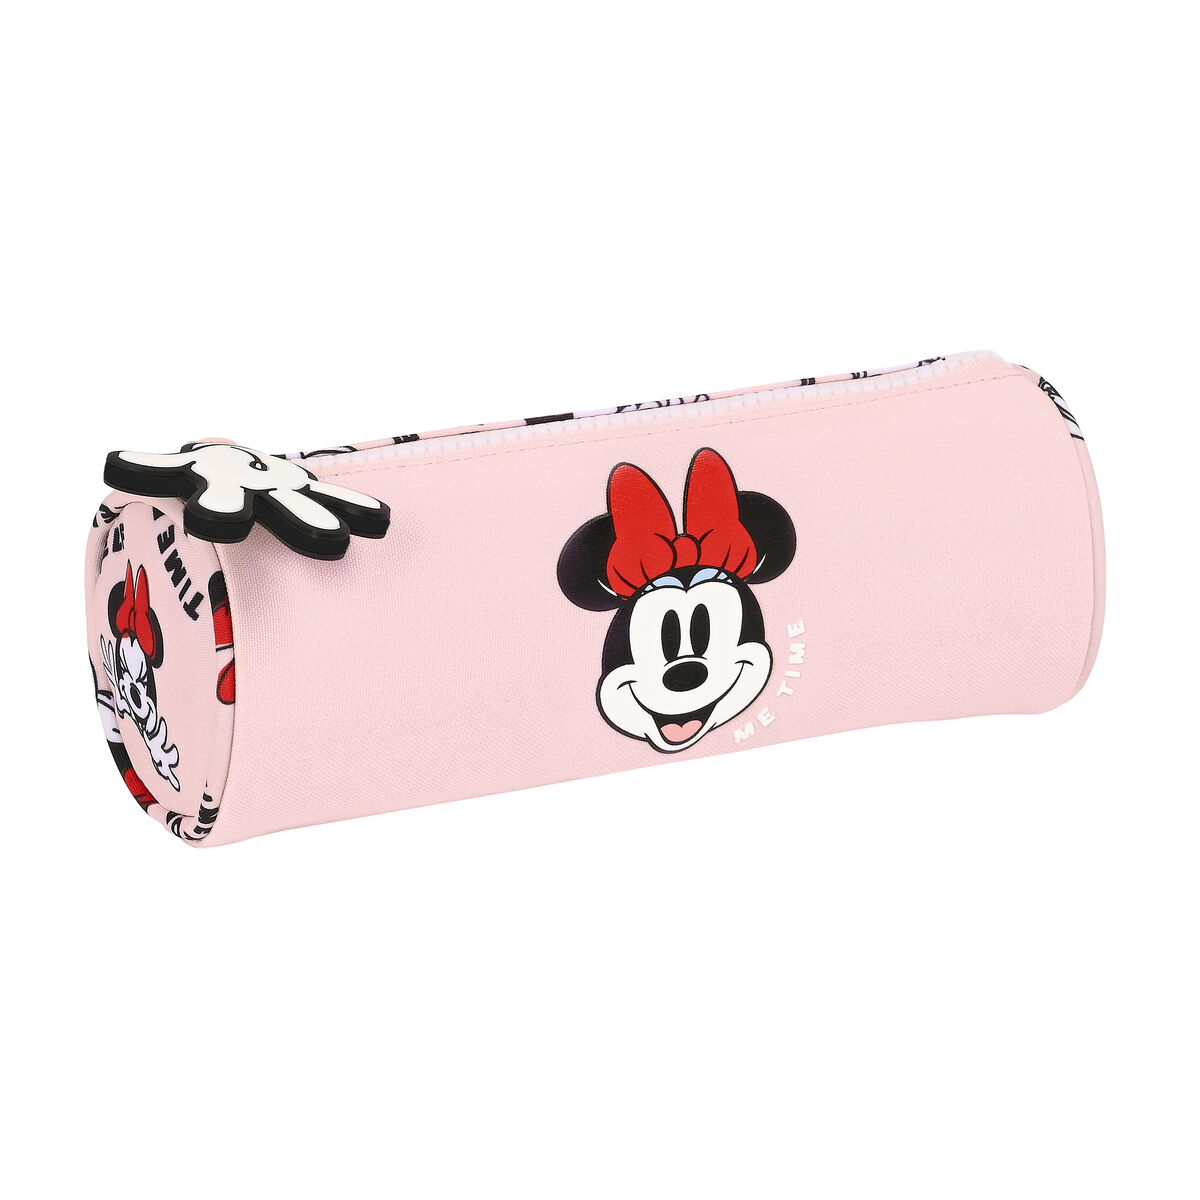 Minnie mouse Faulenzer Schlamperrolle Federtasche Stifttasche Schulmppchen Minnie Mouse Rosa